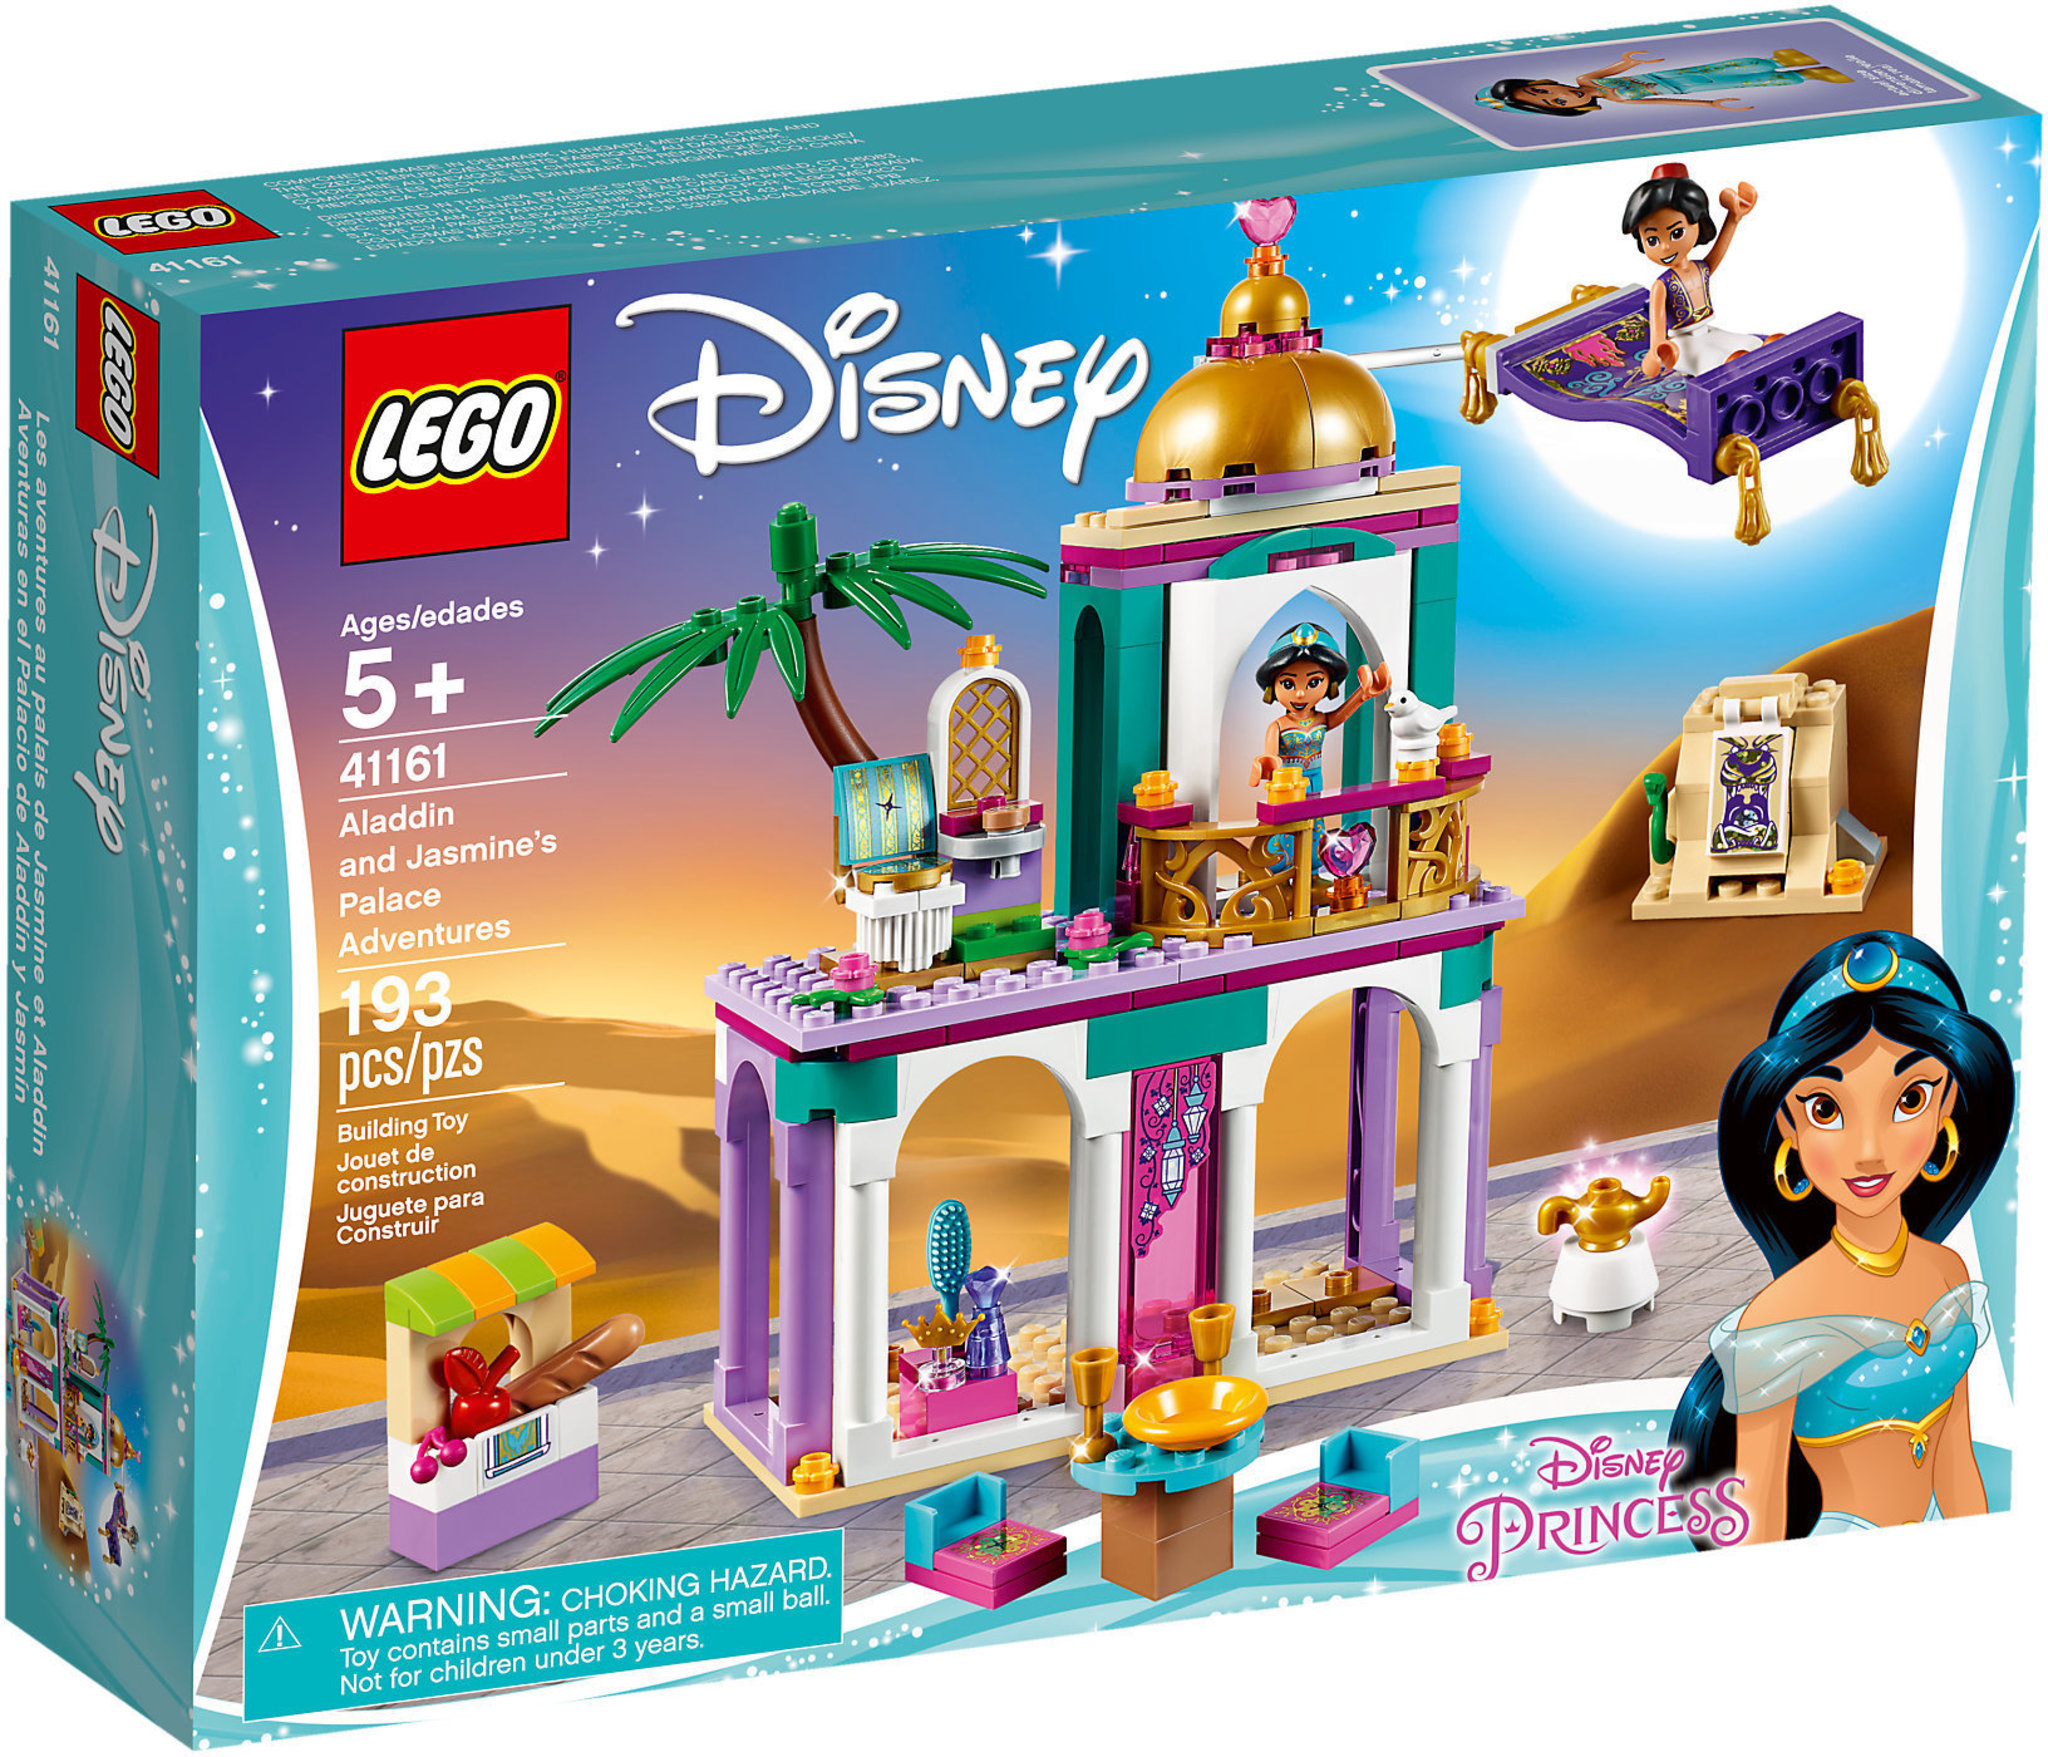 Overleven voorspelling salaris LEGO Disney 41161 - Le Avventure Nel Palazzo Di Aladdin E Jasmine |  Mattonito